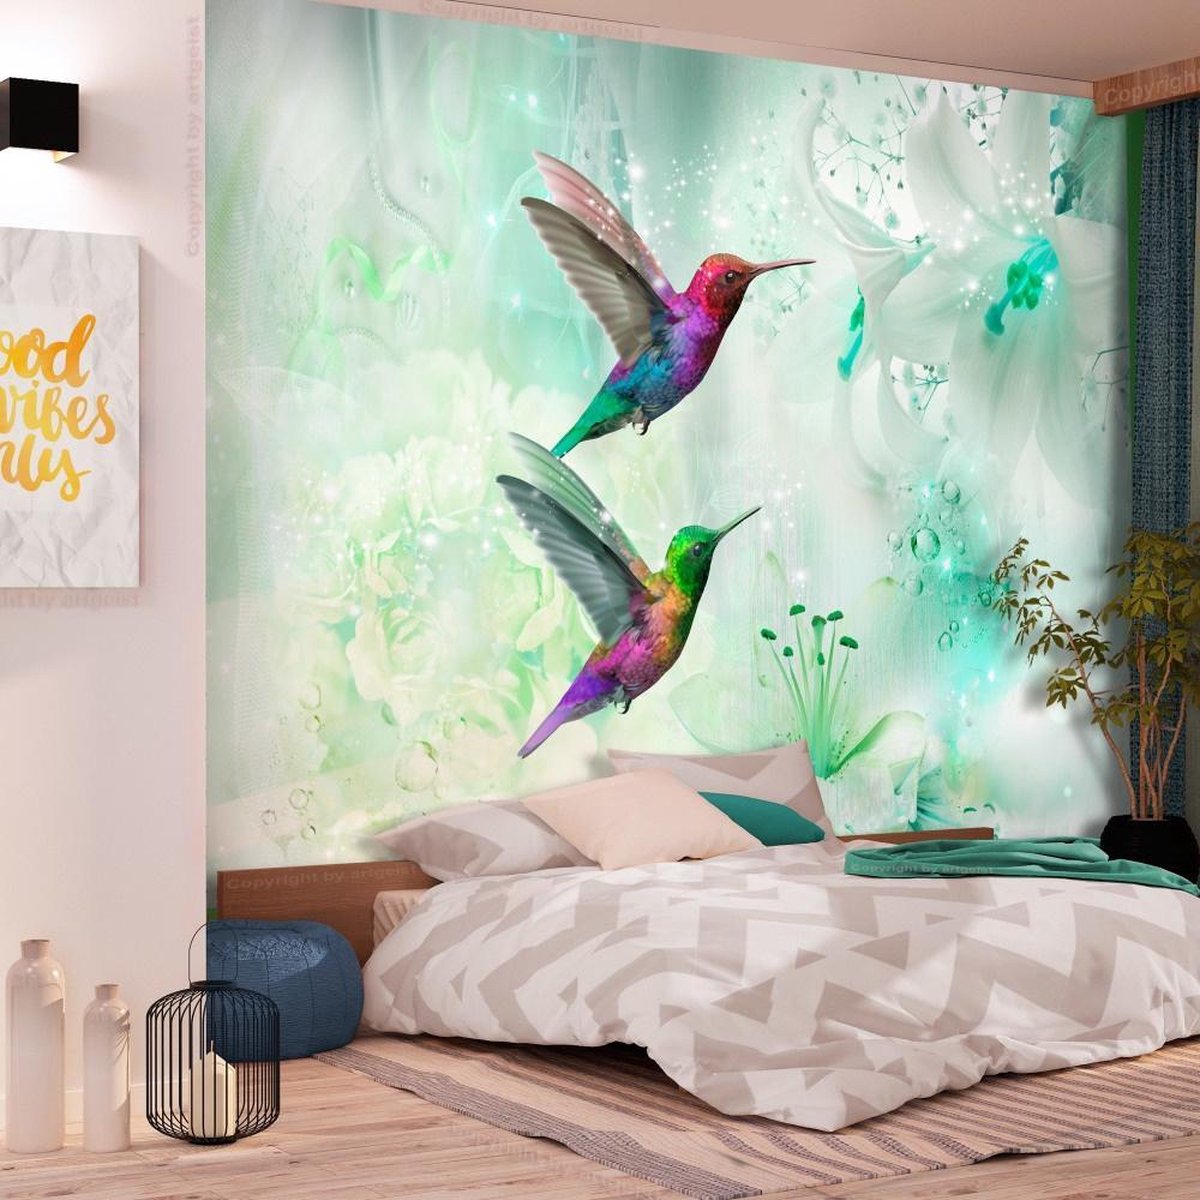 400cm X 280cm - Fotobehang - Kleurrijke Kolibries op Groene achtergrond, premium print vliesbehang - karo-art